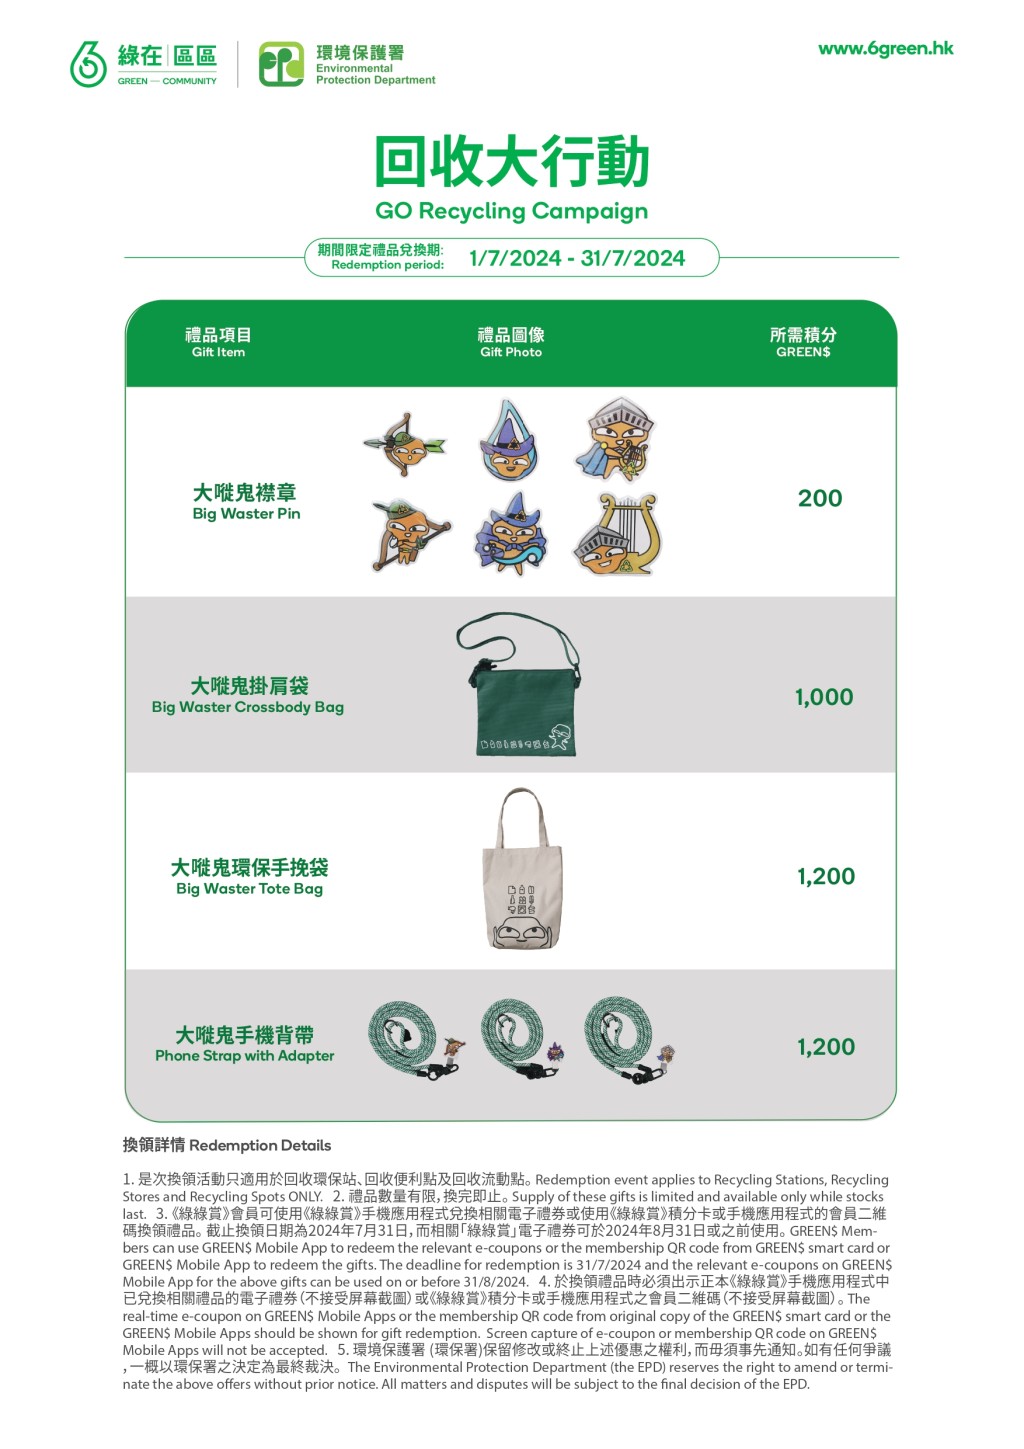 环保署在7月1日至31日推出以“大嘥鬼”为主题的期间限定礼品供市民换领。“香港减废网站”截图